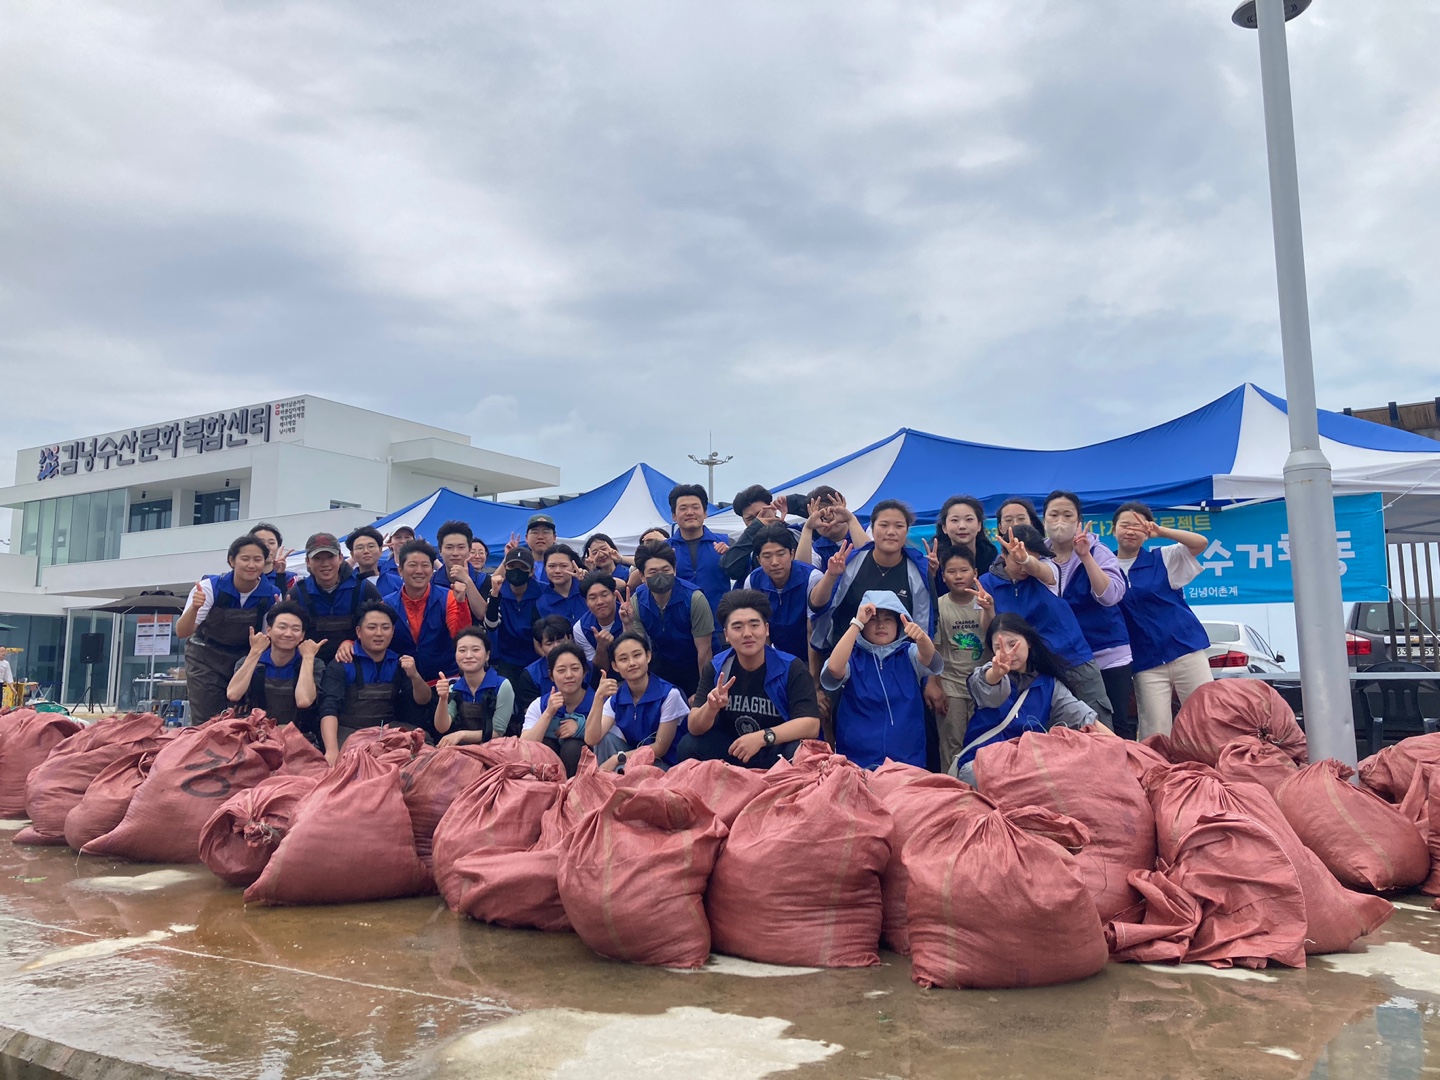 제1회 바다가 꿈 프로젝트(김녕) - 쓰레기포대 뒤에서 단체사진을 찍고 있는 사진